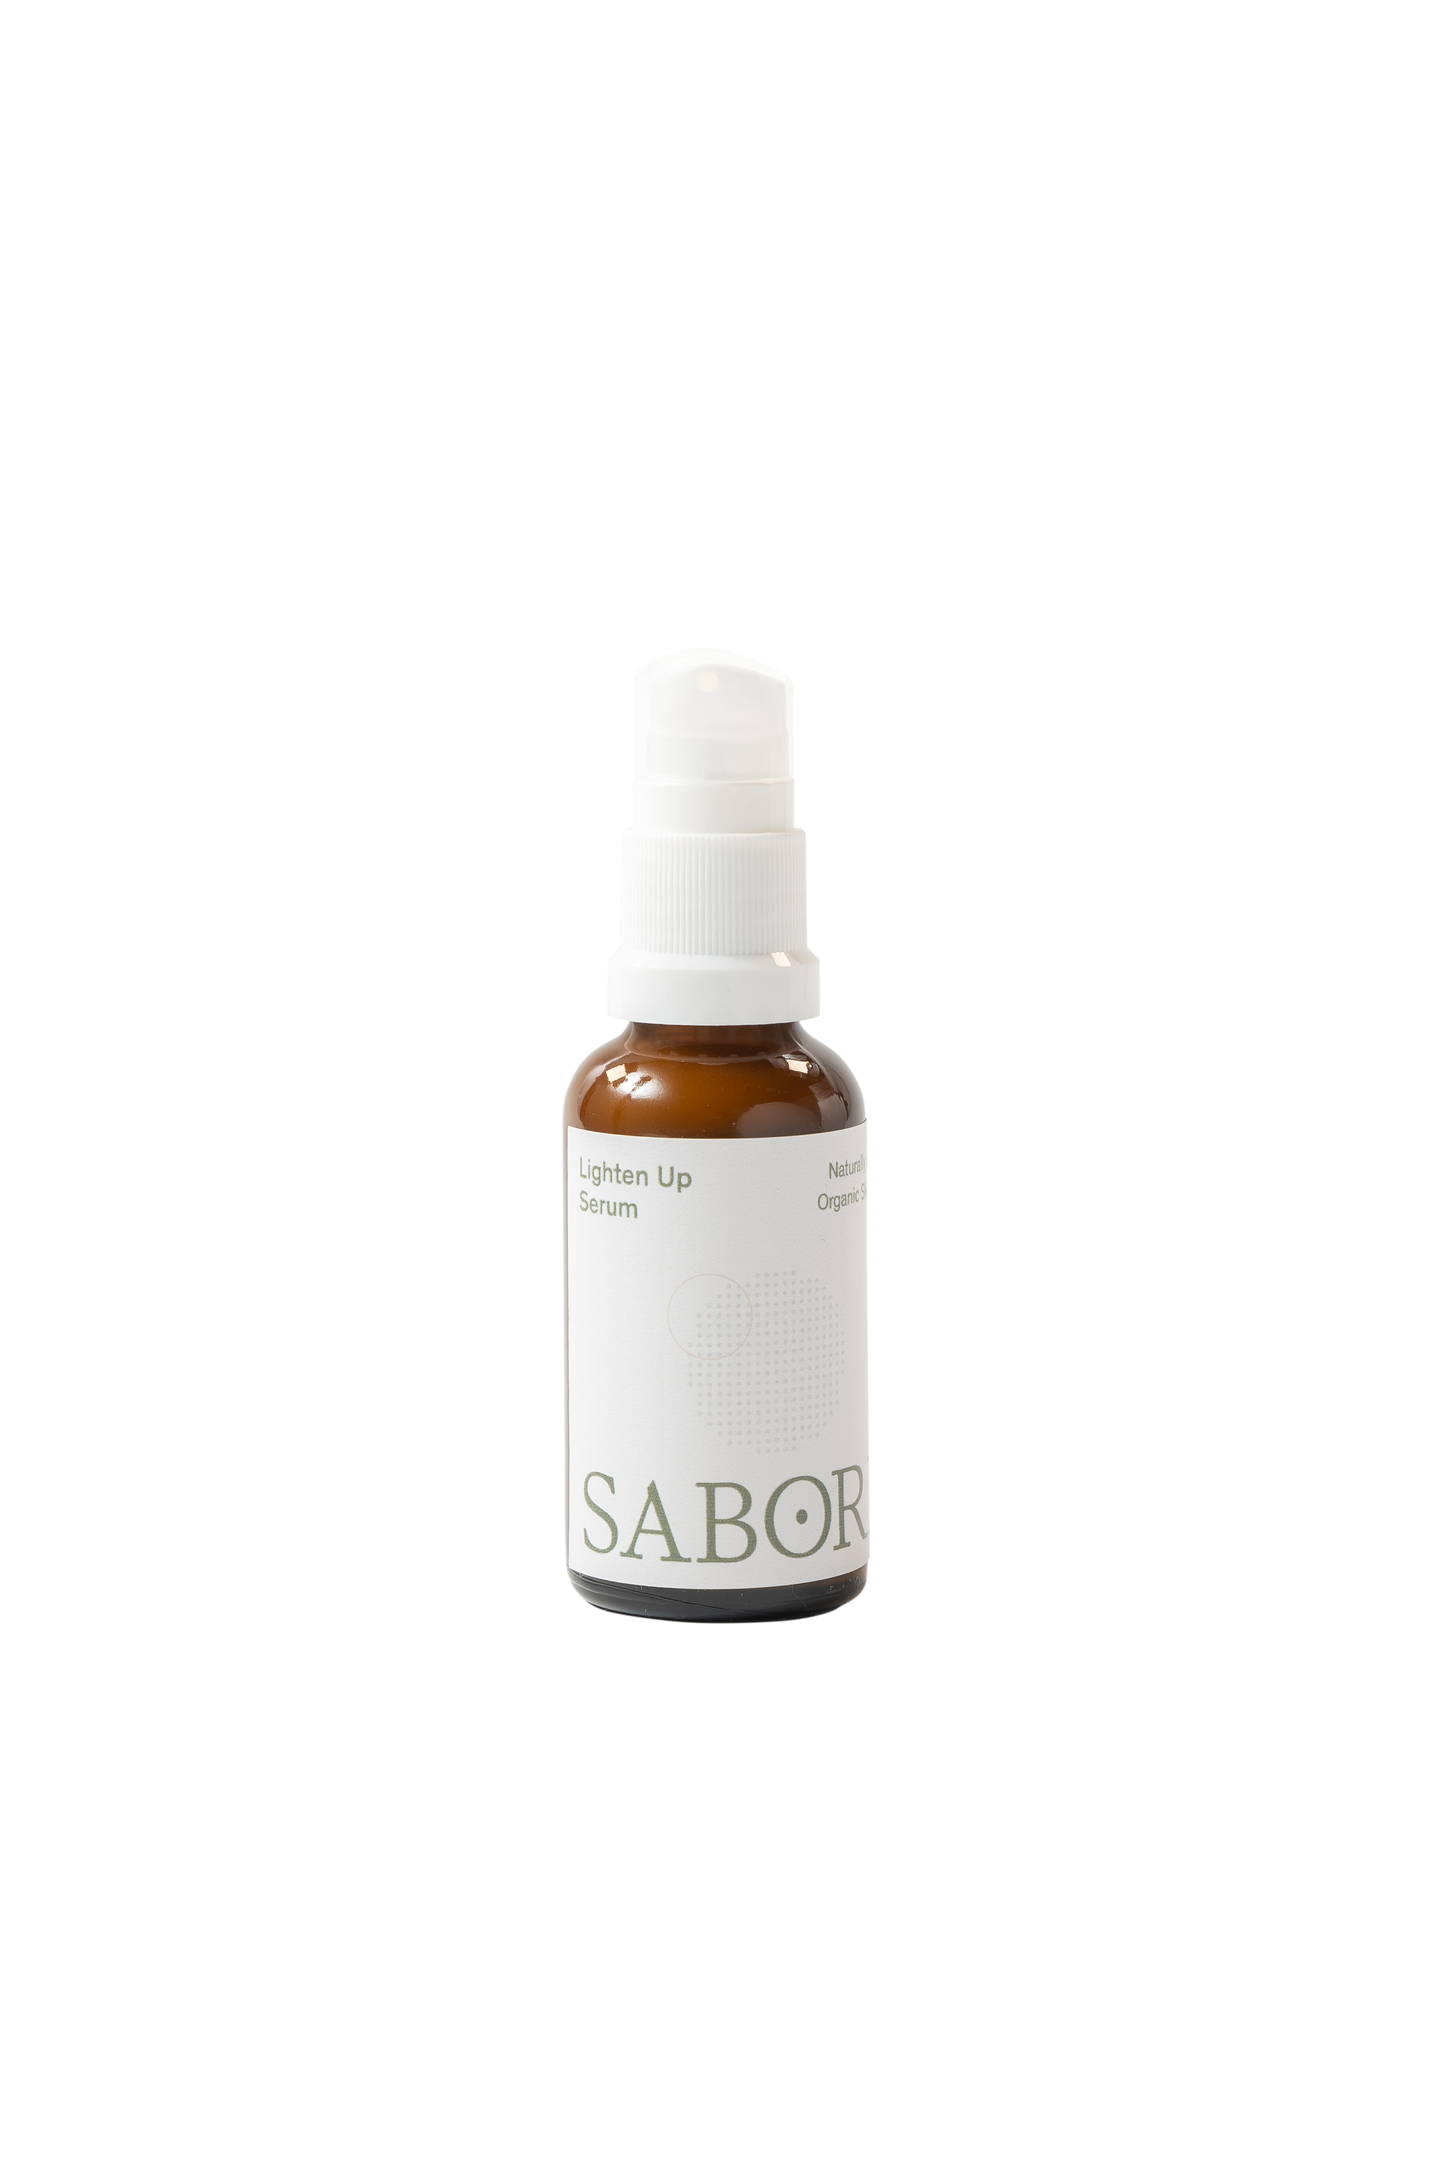 Sabore Lighten Up Serum (Pigmentation)